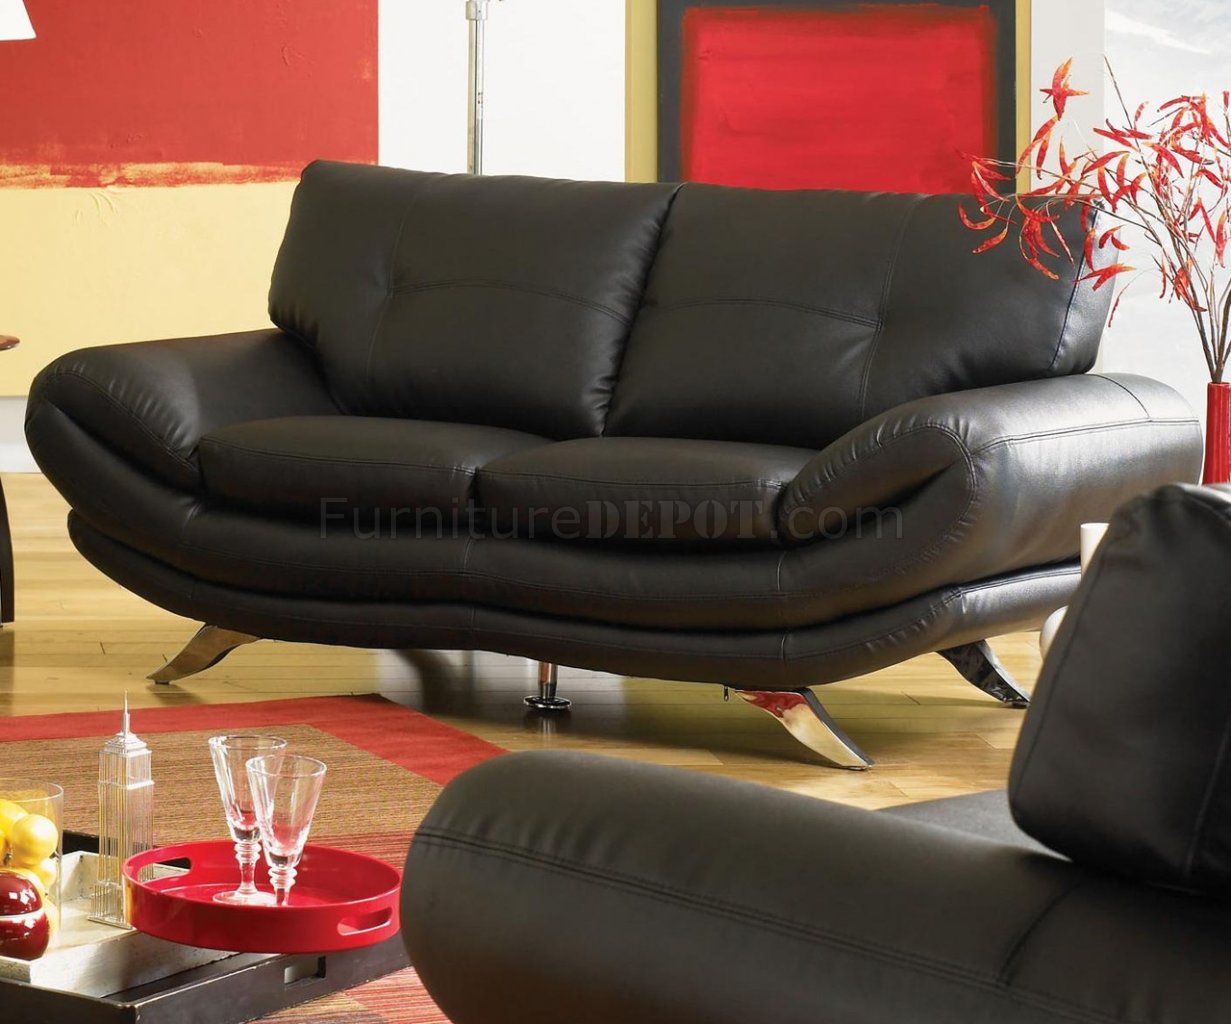 Contemporary Living Room U334 Black, Black Leather Sofa With Chrome Feet